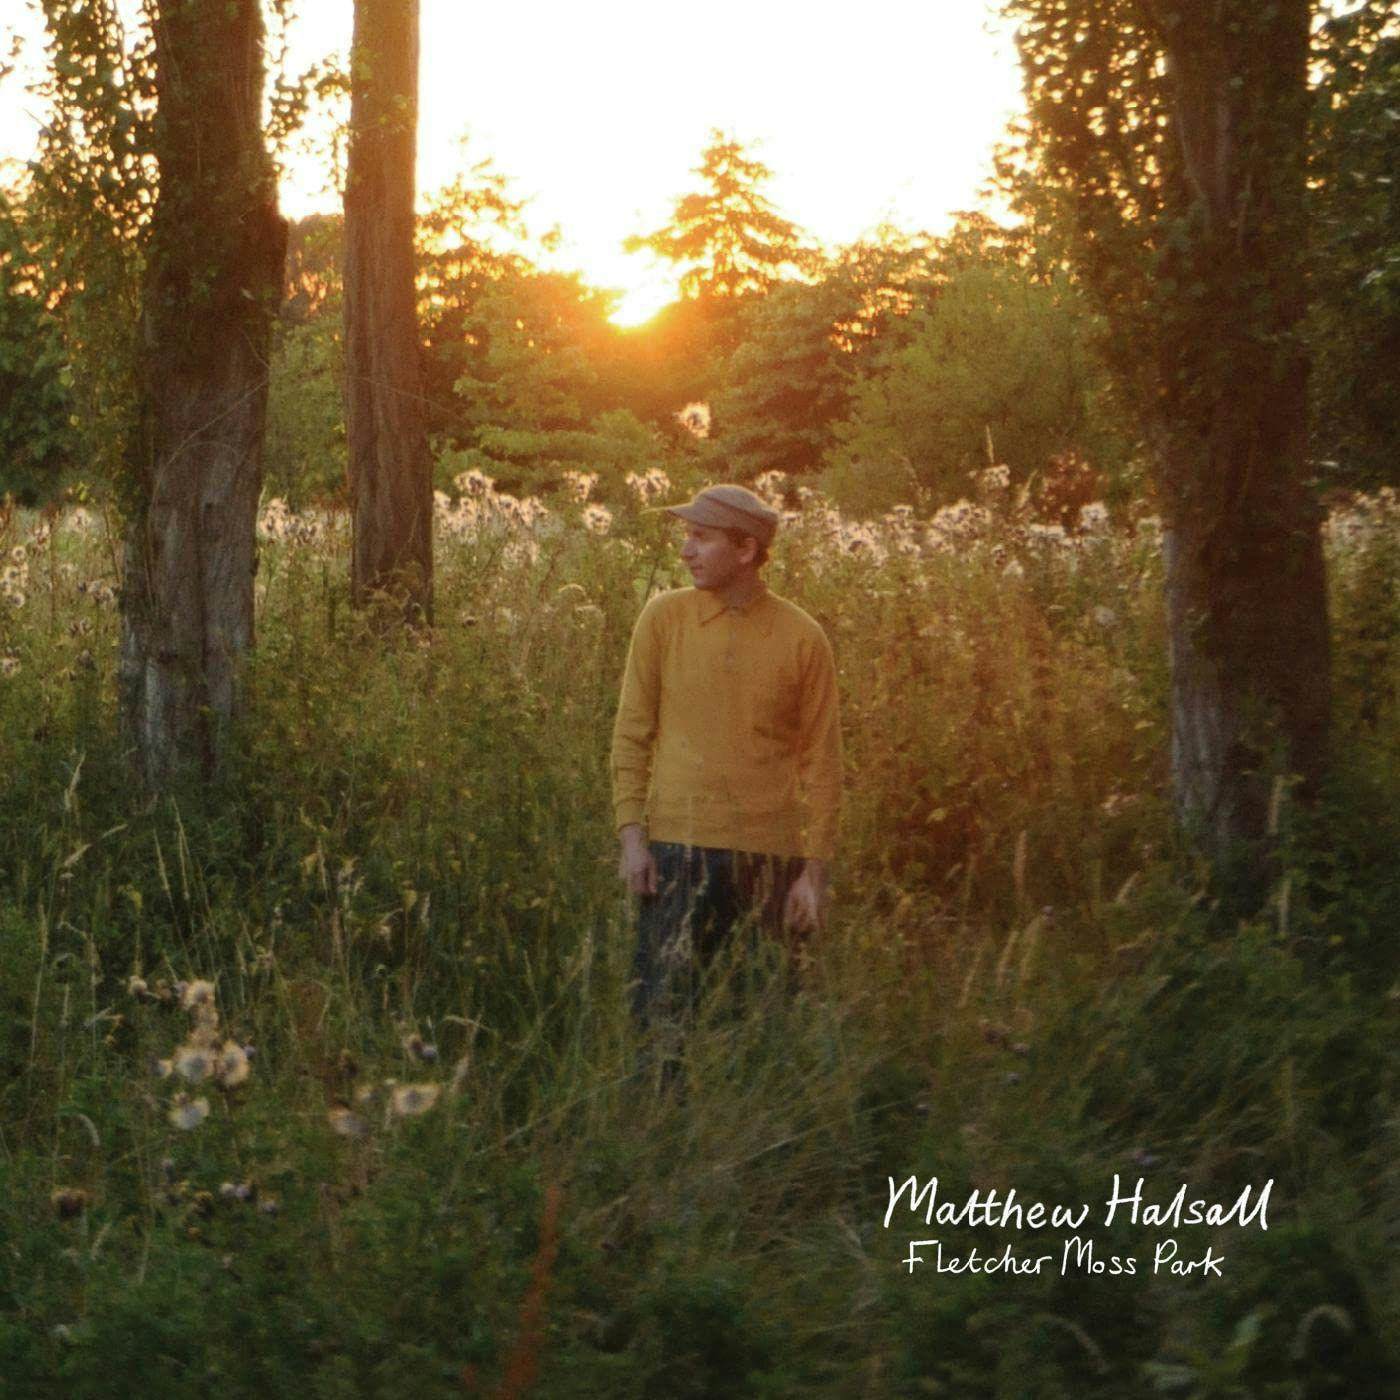 Matthew Halsall Fletcher Moss Park Vinyl Record